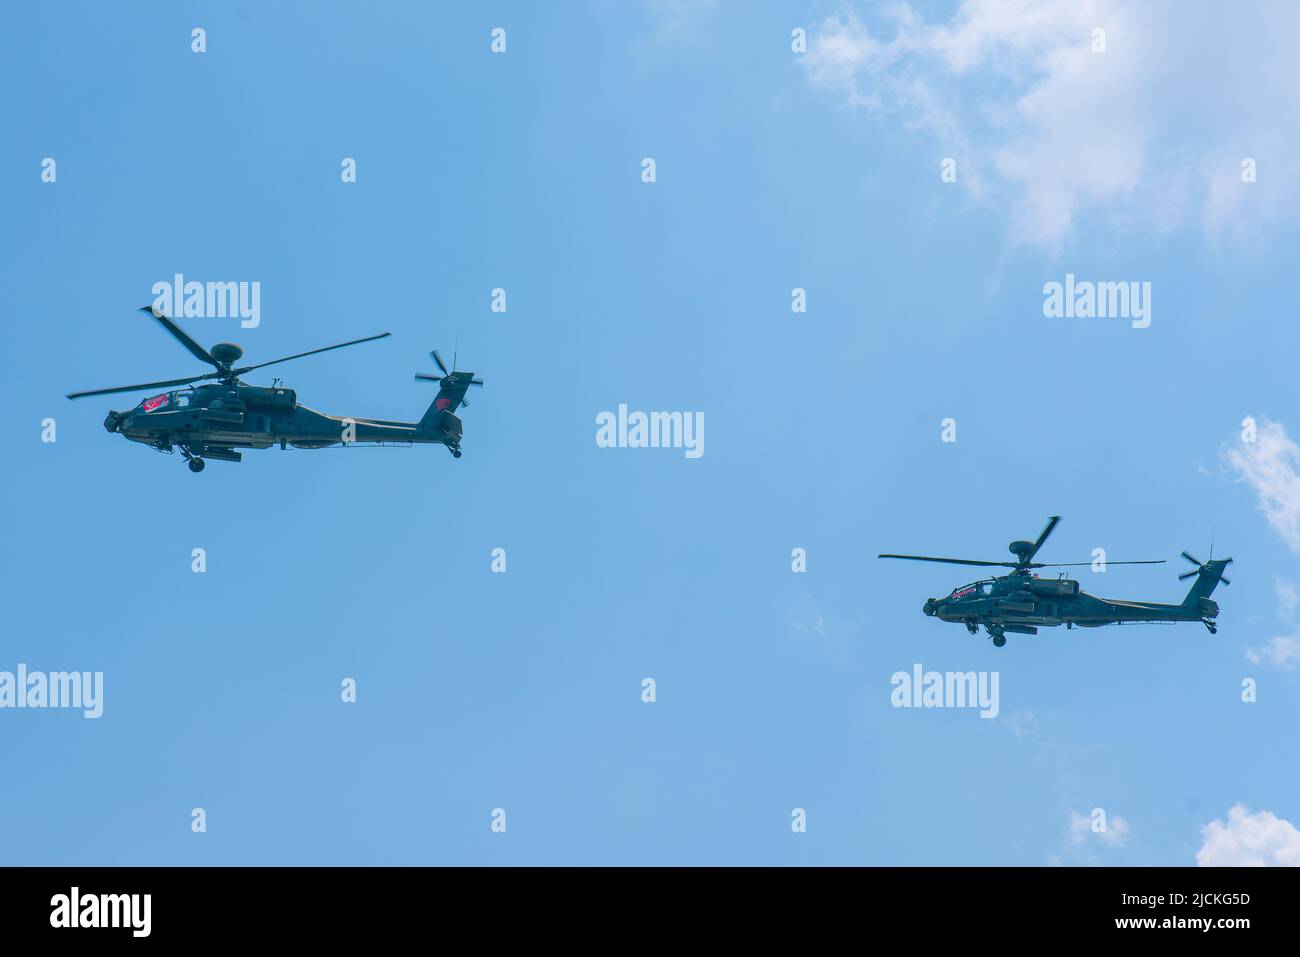 singapur, Singapur - 11 de agosto de 2018: He AH-64D Apache es un helicóptero multi-misión, diseñado para luchar y sobrevivir en el día, la noche y el clima adverso Foto de stock